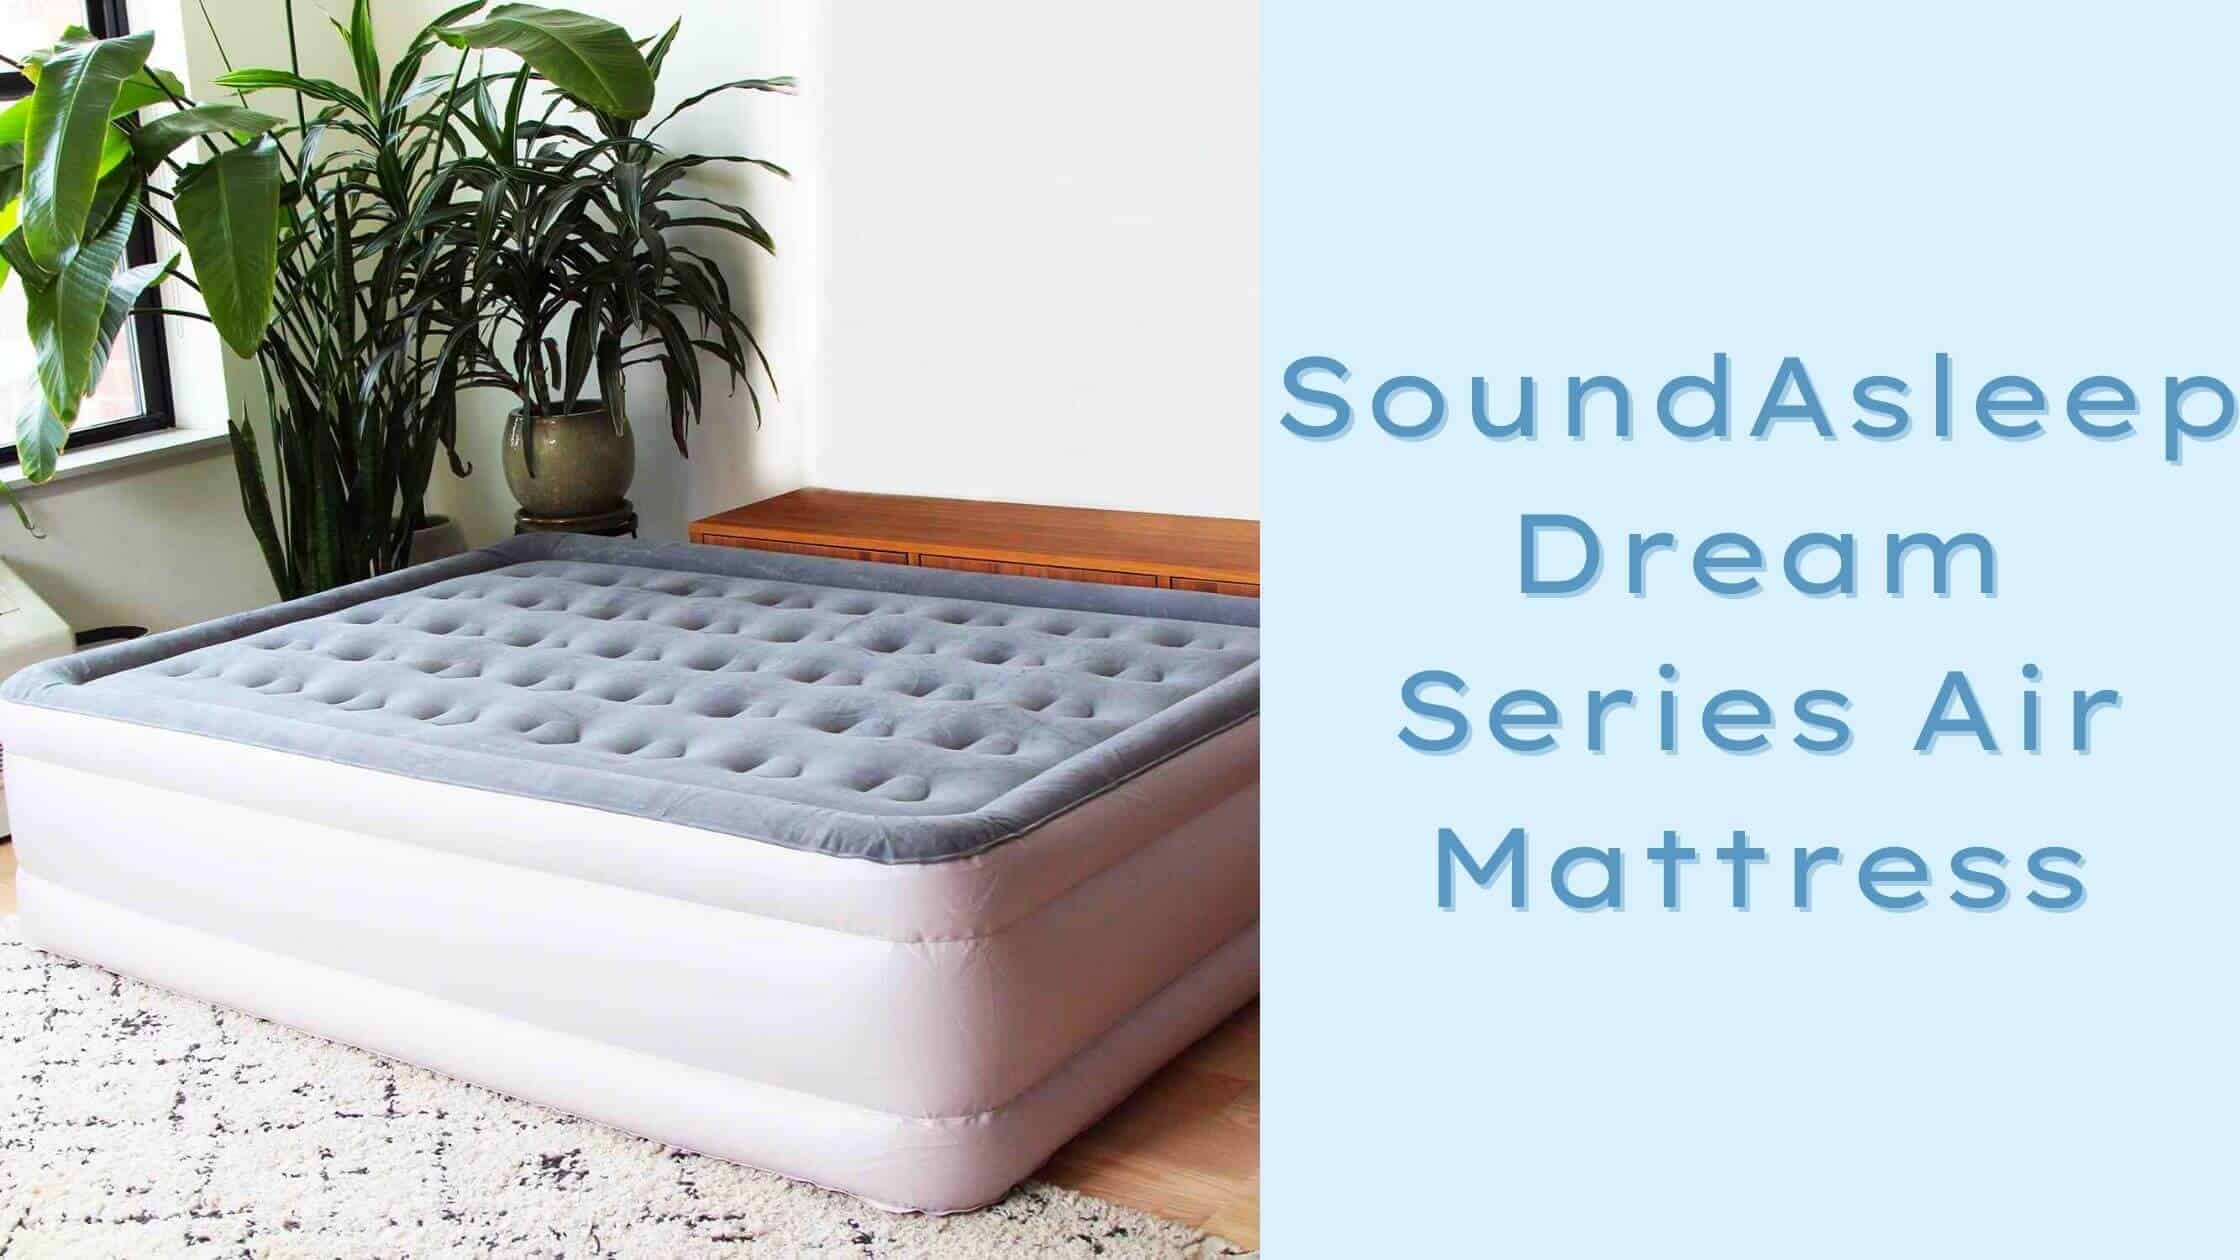 SoundAsleep Dream Series Air Mattress